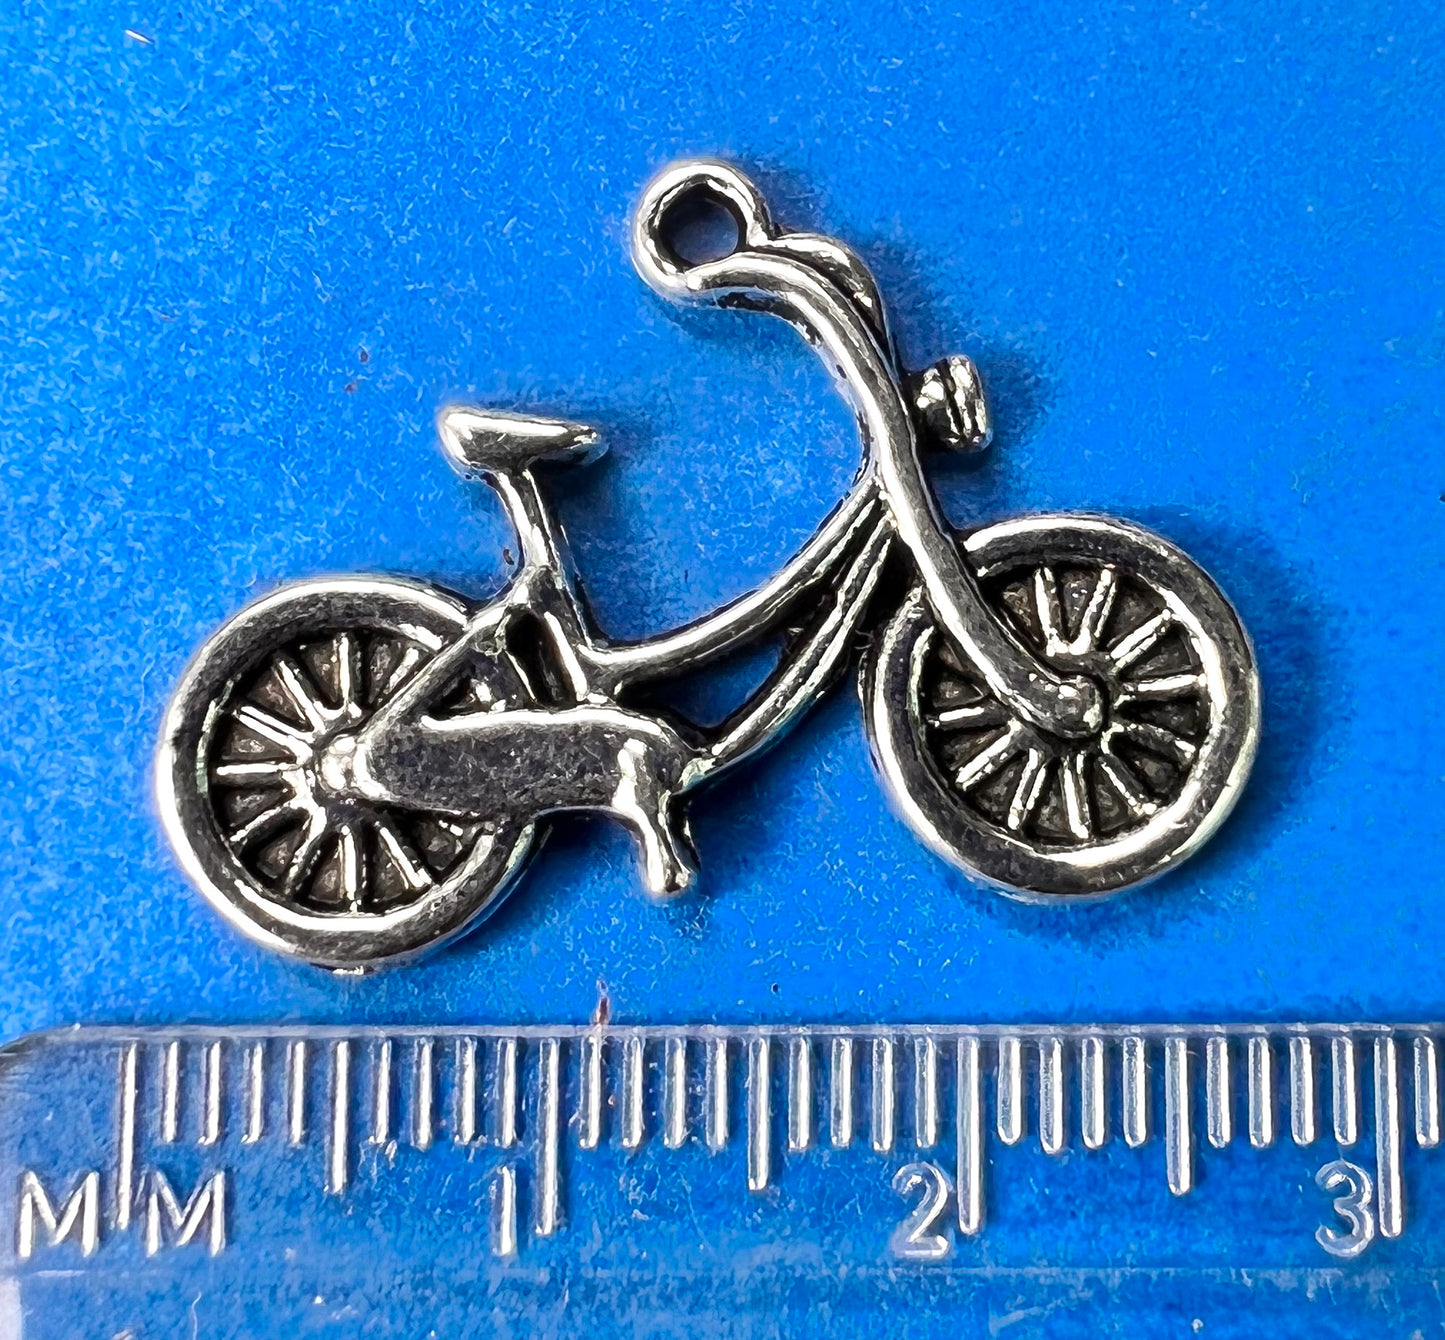 3 Bike Charms / Pendants - 2.8cm long